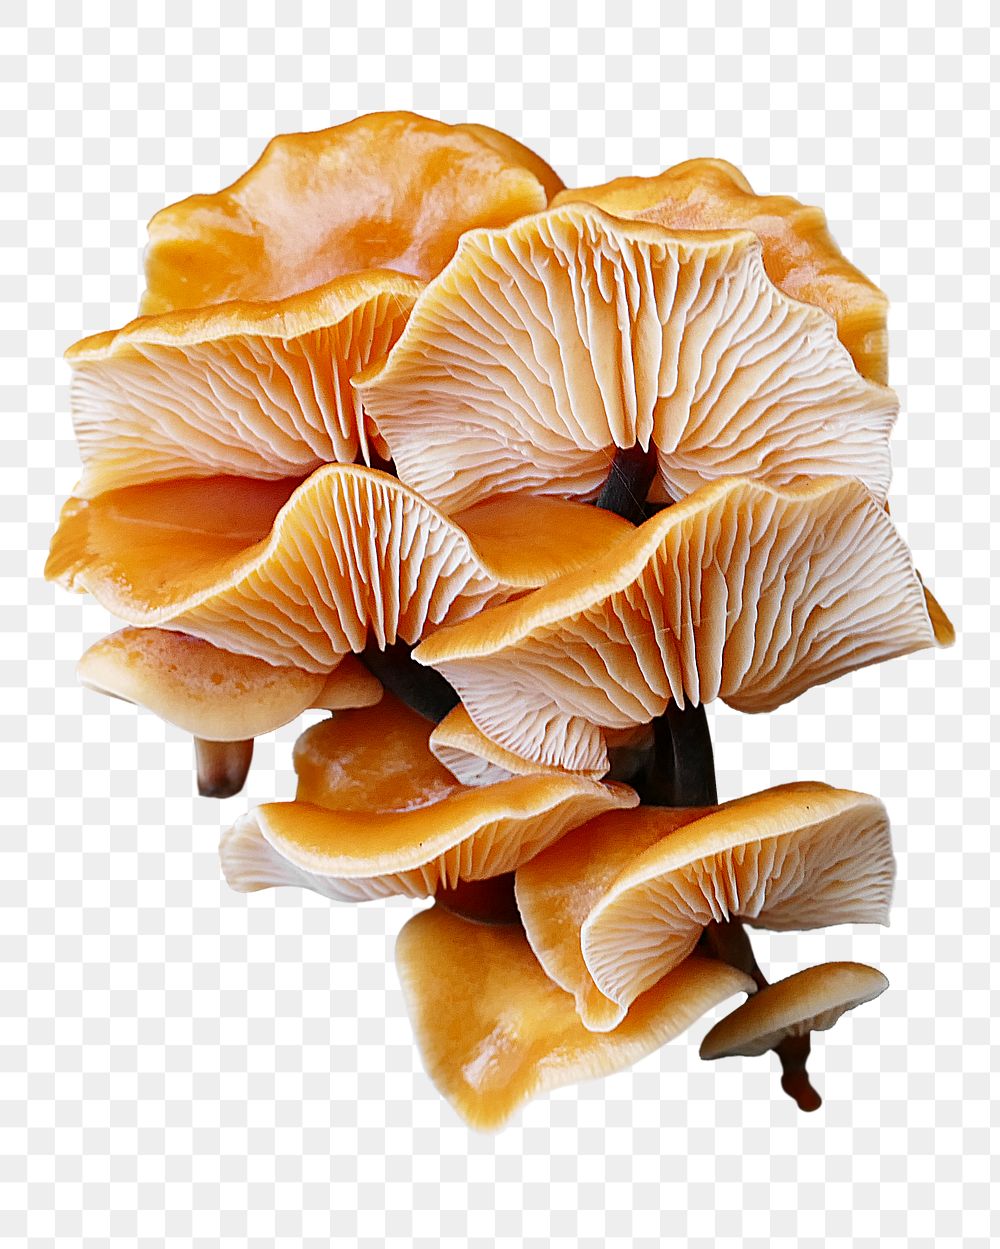 Enokitake mushrooms png sticker, transparent background